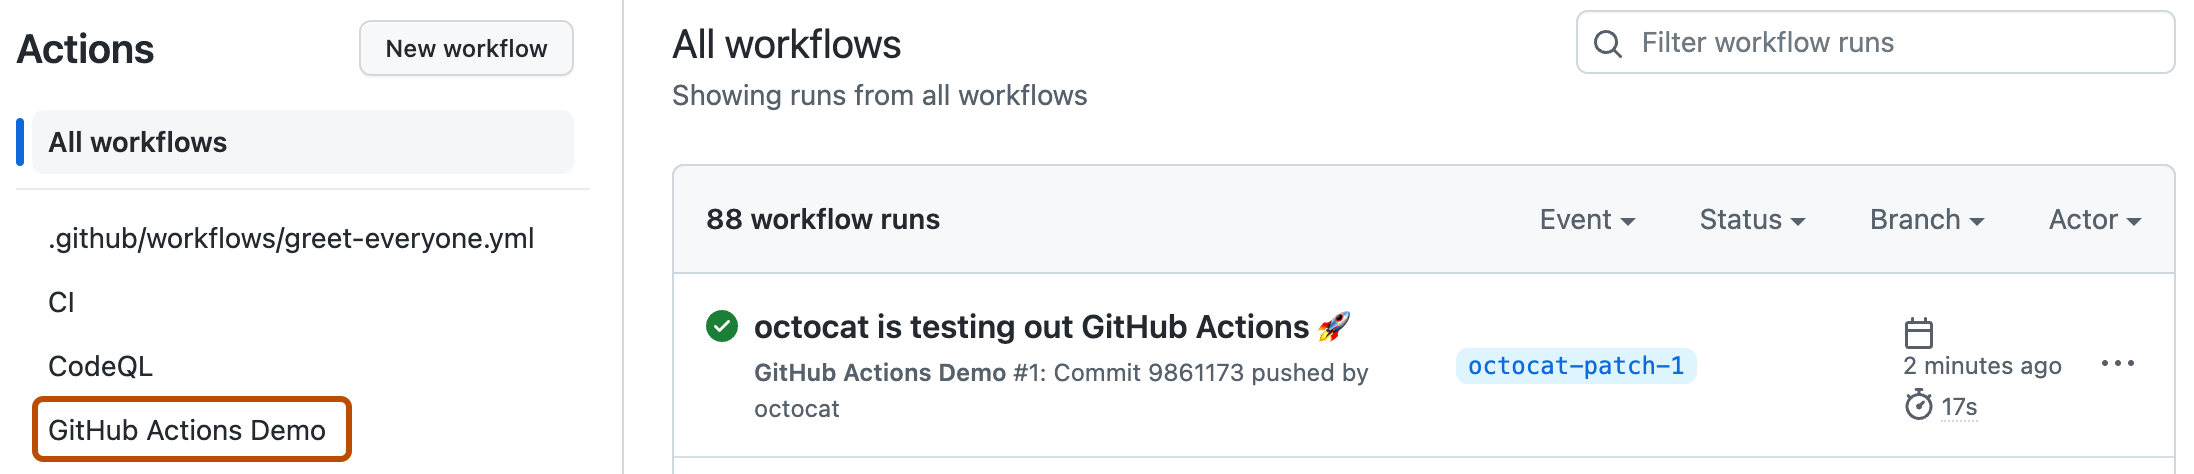 "동작(Actions)" 페이지 스크린샷. 예제 워크플로의 이름인 "GitHub Actions 데모모"는 진한 주황색 윤곽선으로 강조 표시됩니다.